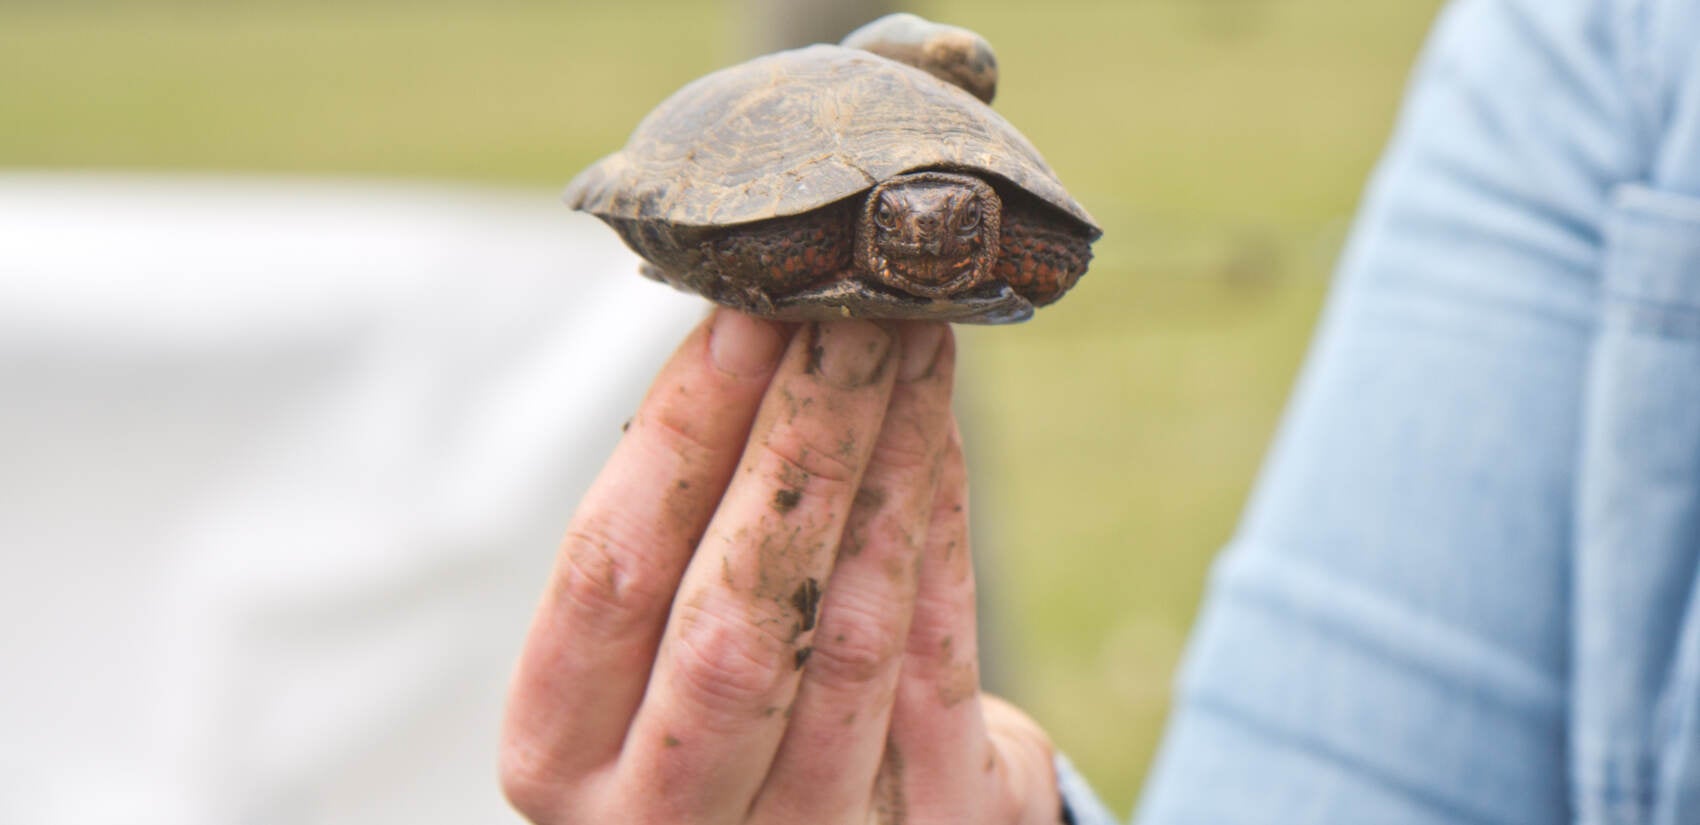 A closeup of a bog turtle